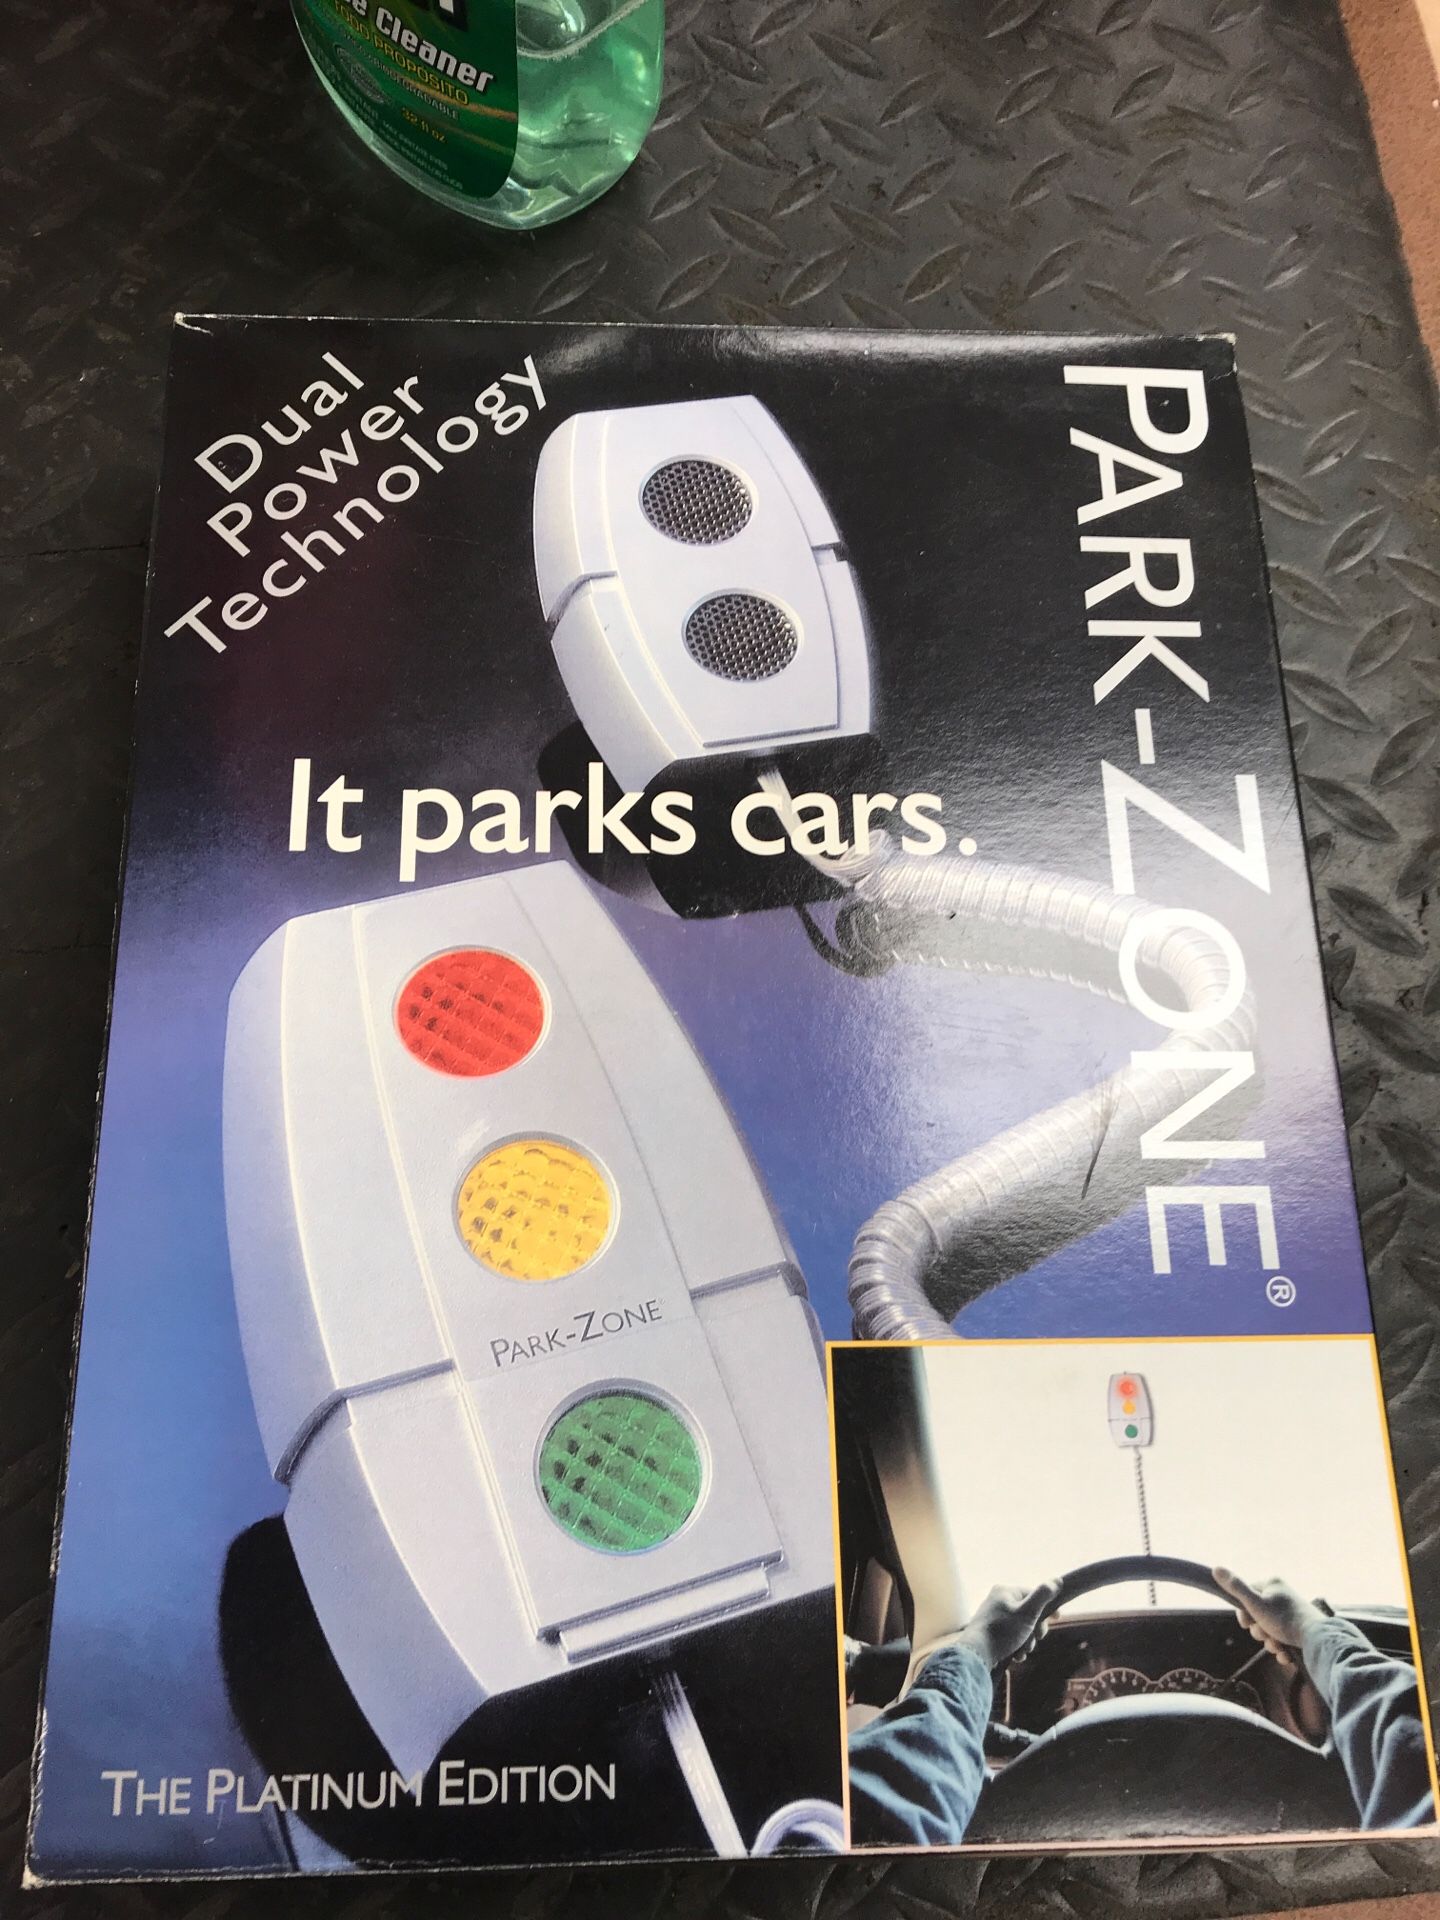 Park-zone